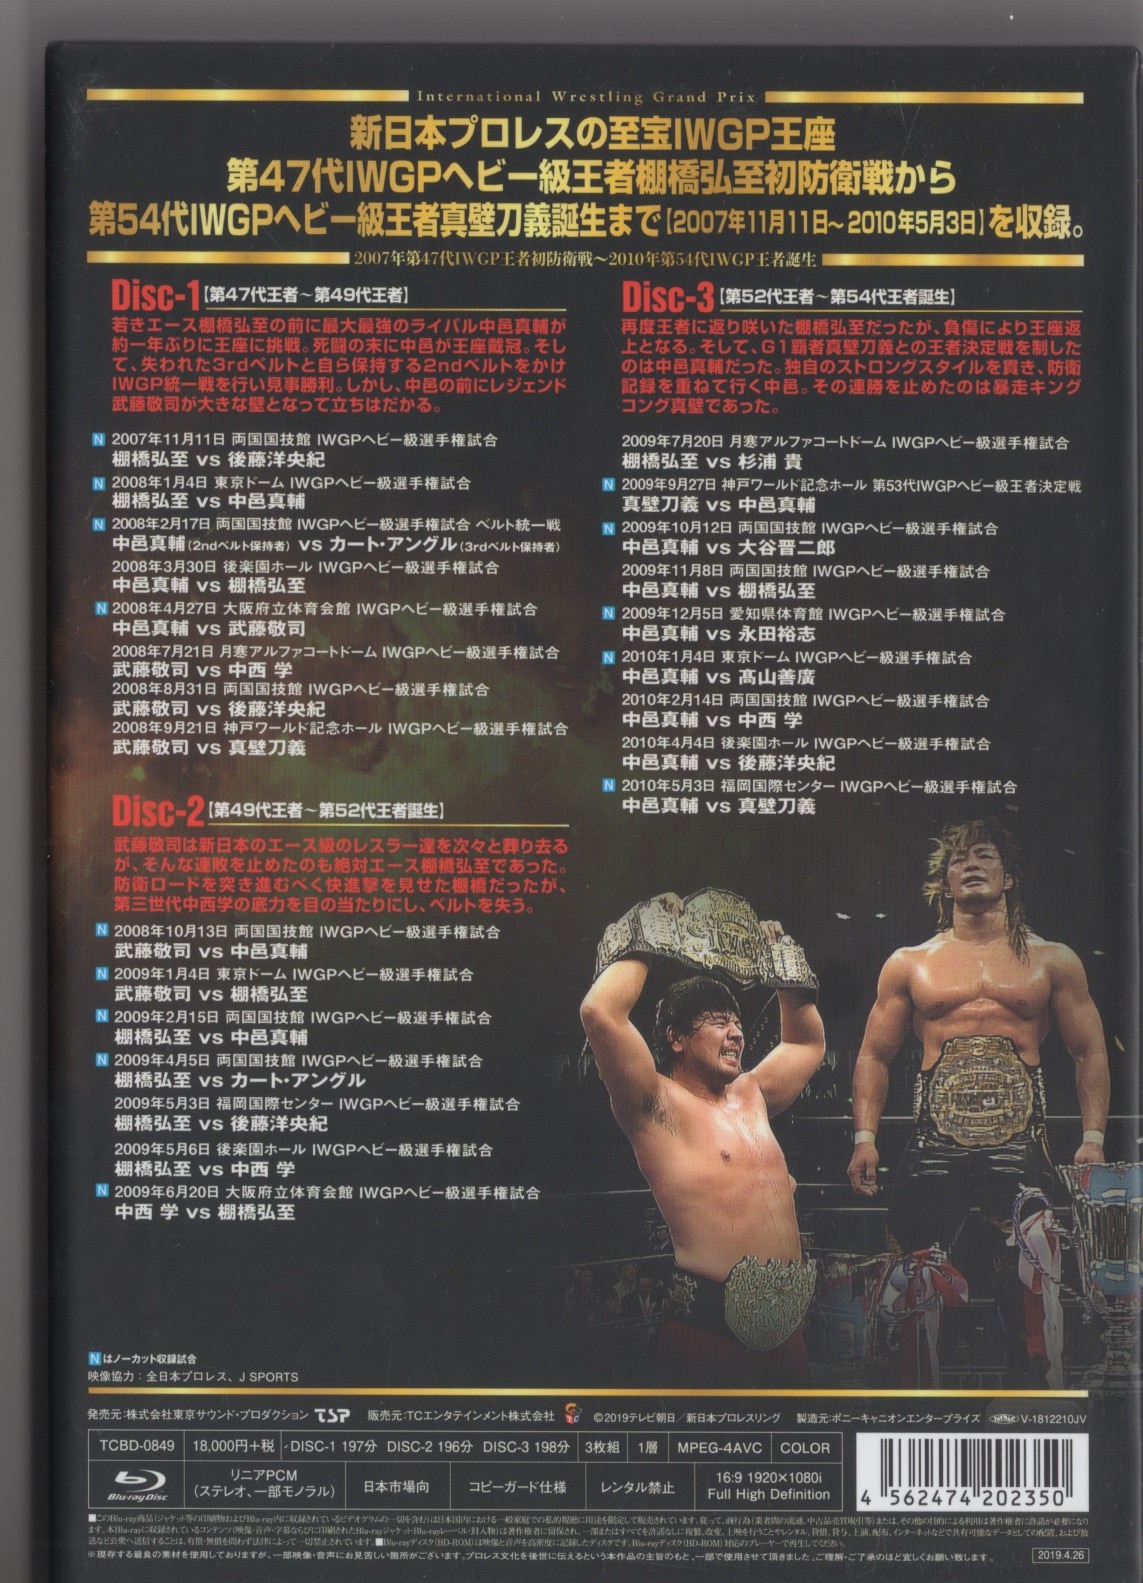 一流の品質 新日本プロレス [Blu-ray] DVD スポーツ ブルーレイ IWGP烈伝 Vol.1』Blu-rayが4月24日発売 Ⅵ  IWGP烈伝COMPLETE-BOX 〈3枚組〉 外国人レスラー烈伝 〈3枚 VIII【Blu-ray-BOX】 DVD